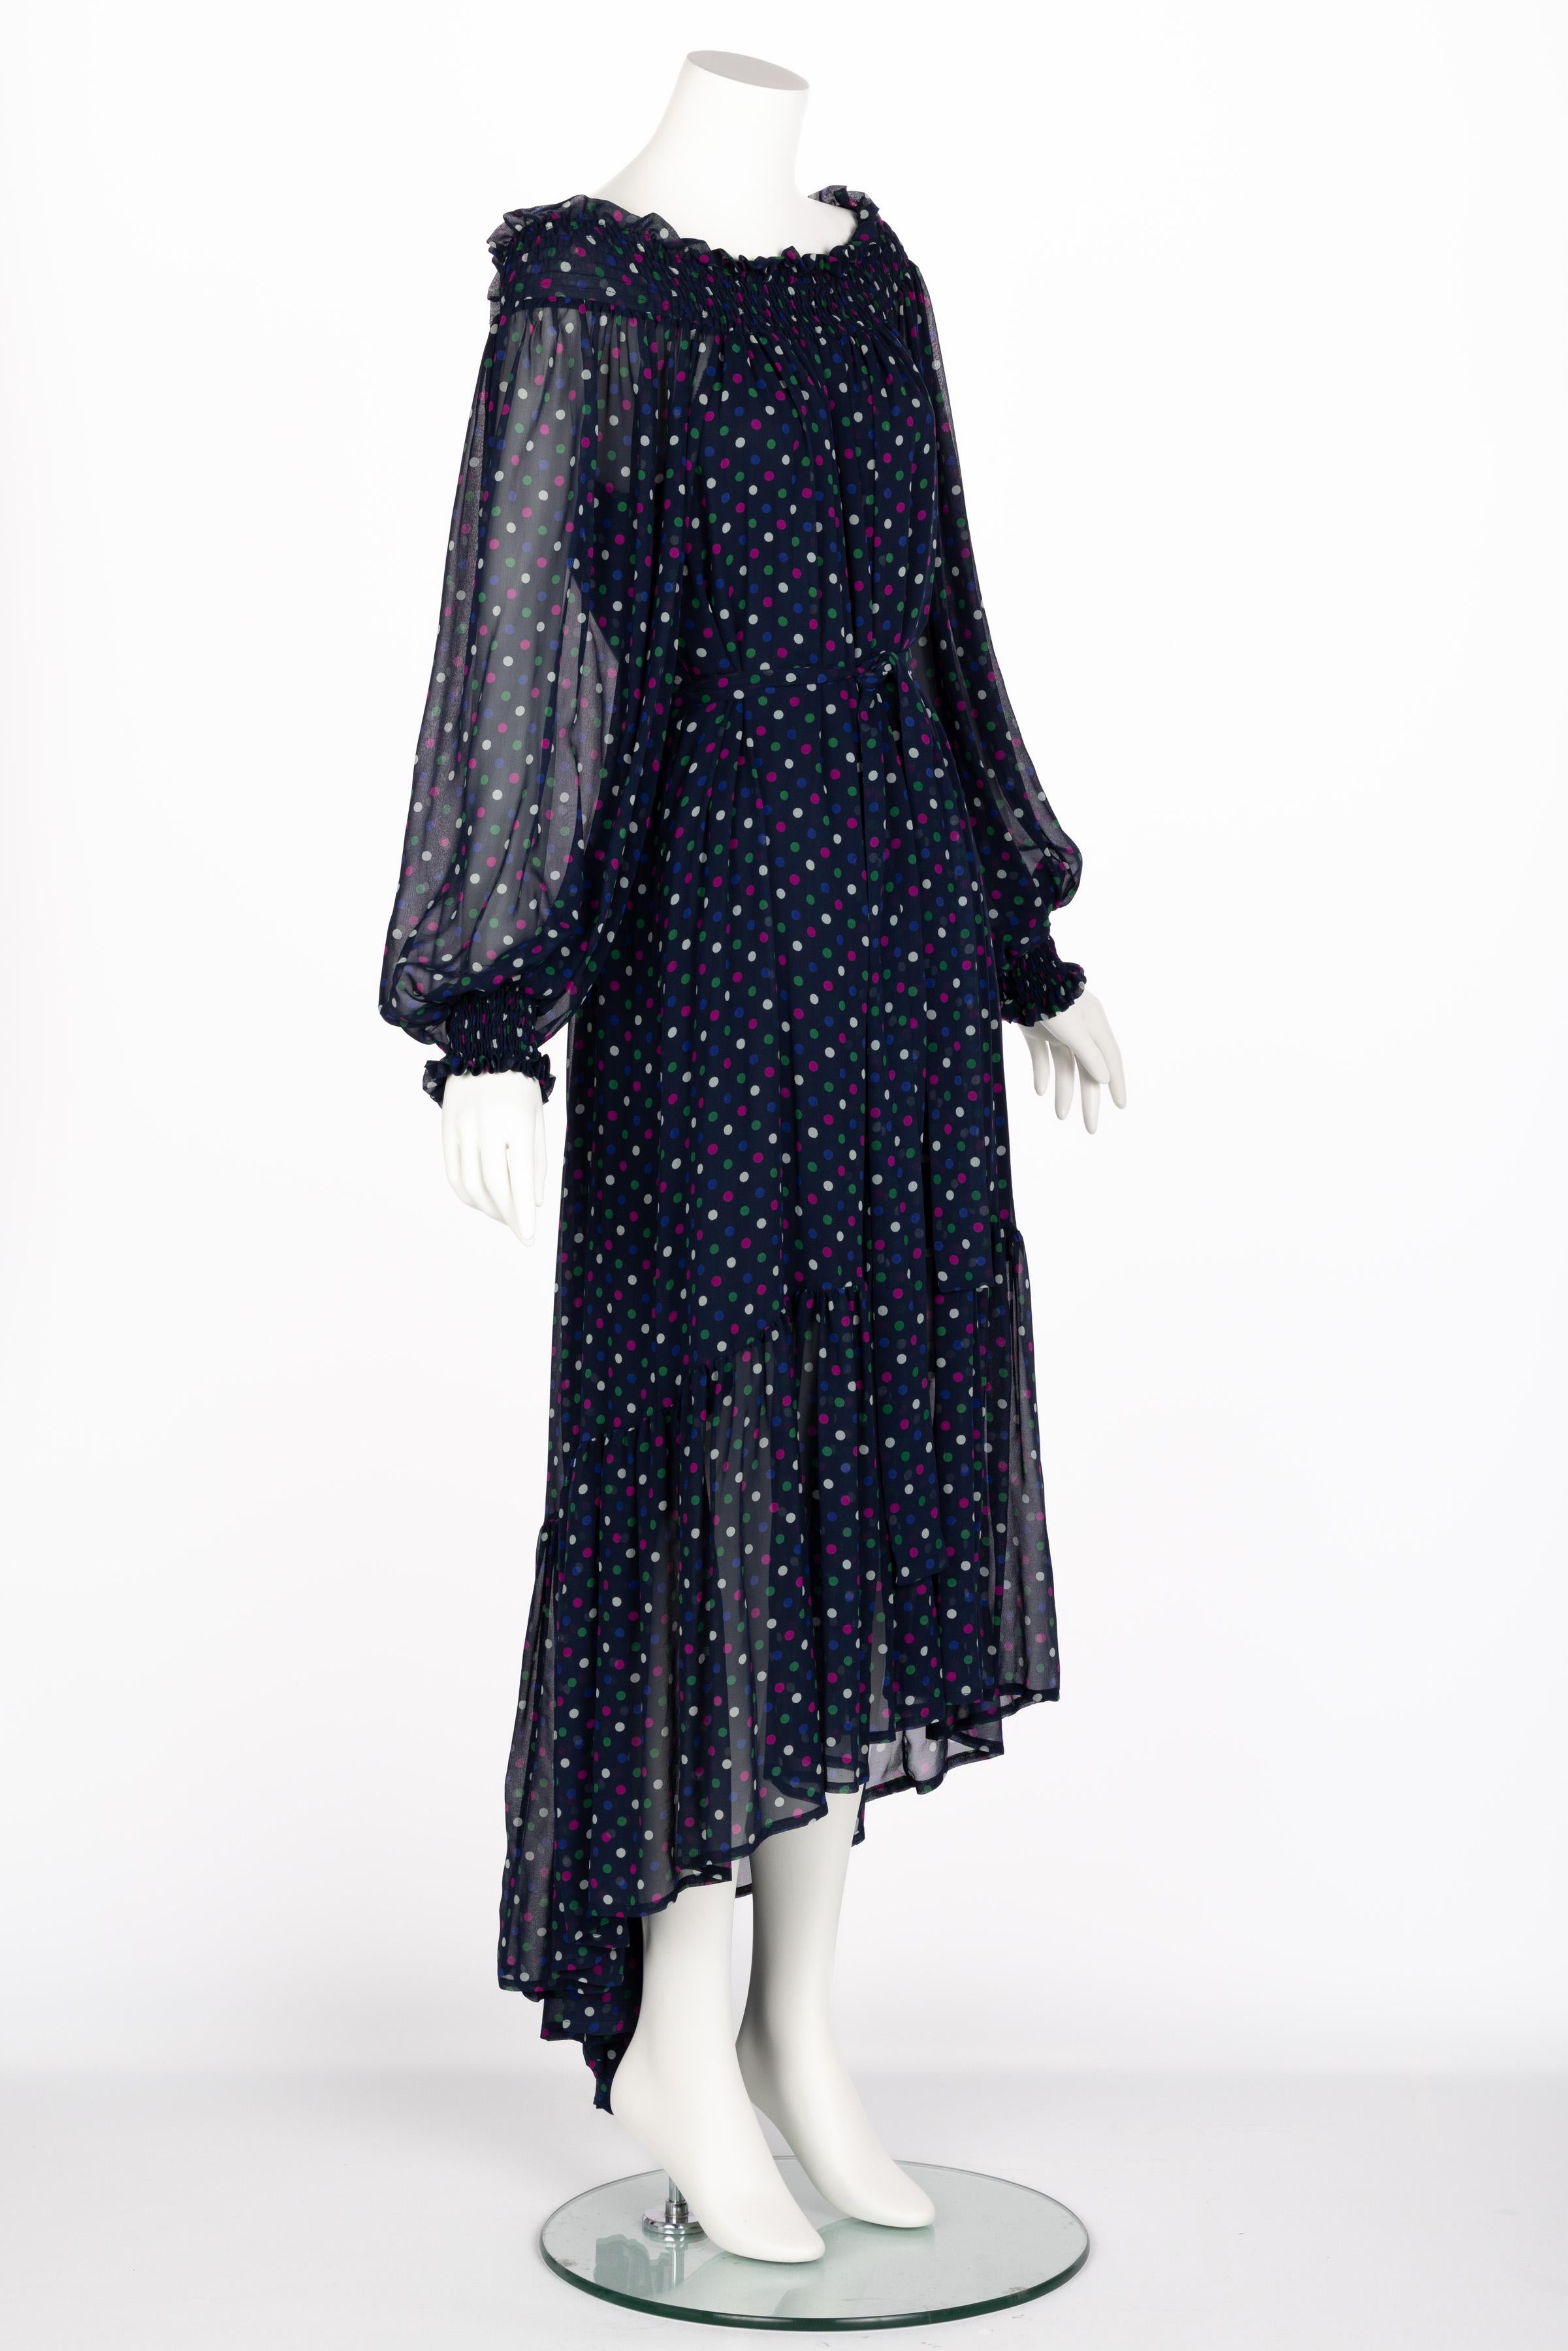 Saint Laurent Blue Polka Dot Off Shoulder Silk Dress YSL 1970s For Sale 1